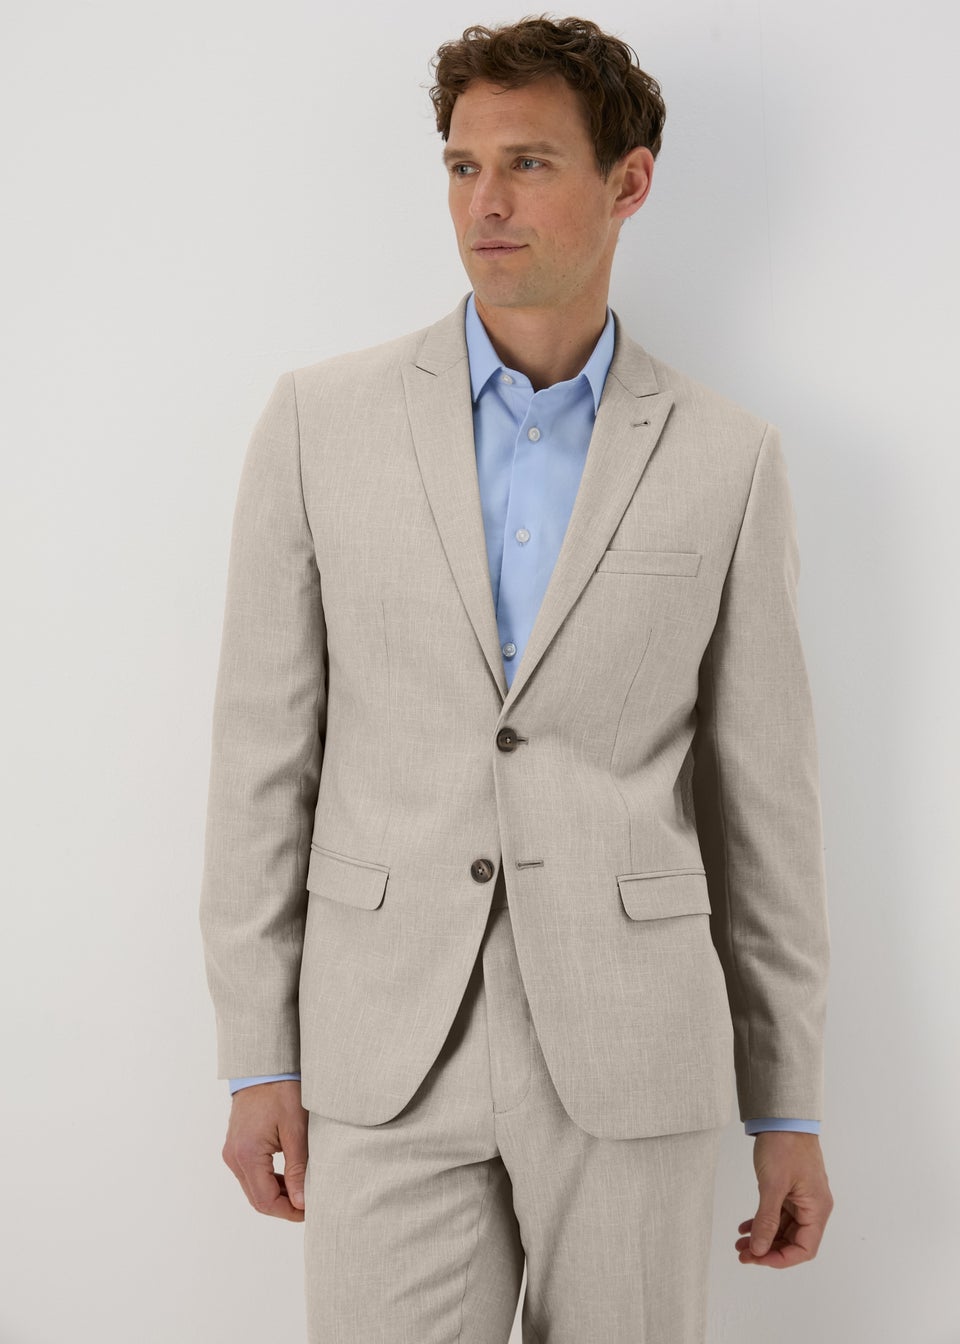 Yousif Milad - Suit specialist - BEST Menswear | LinkedIn